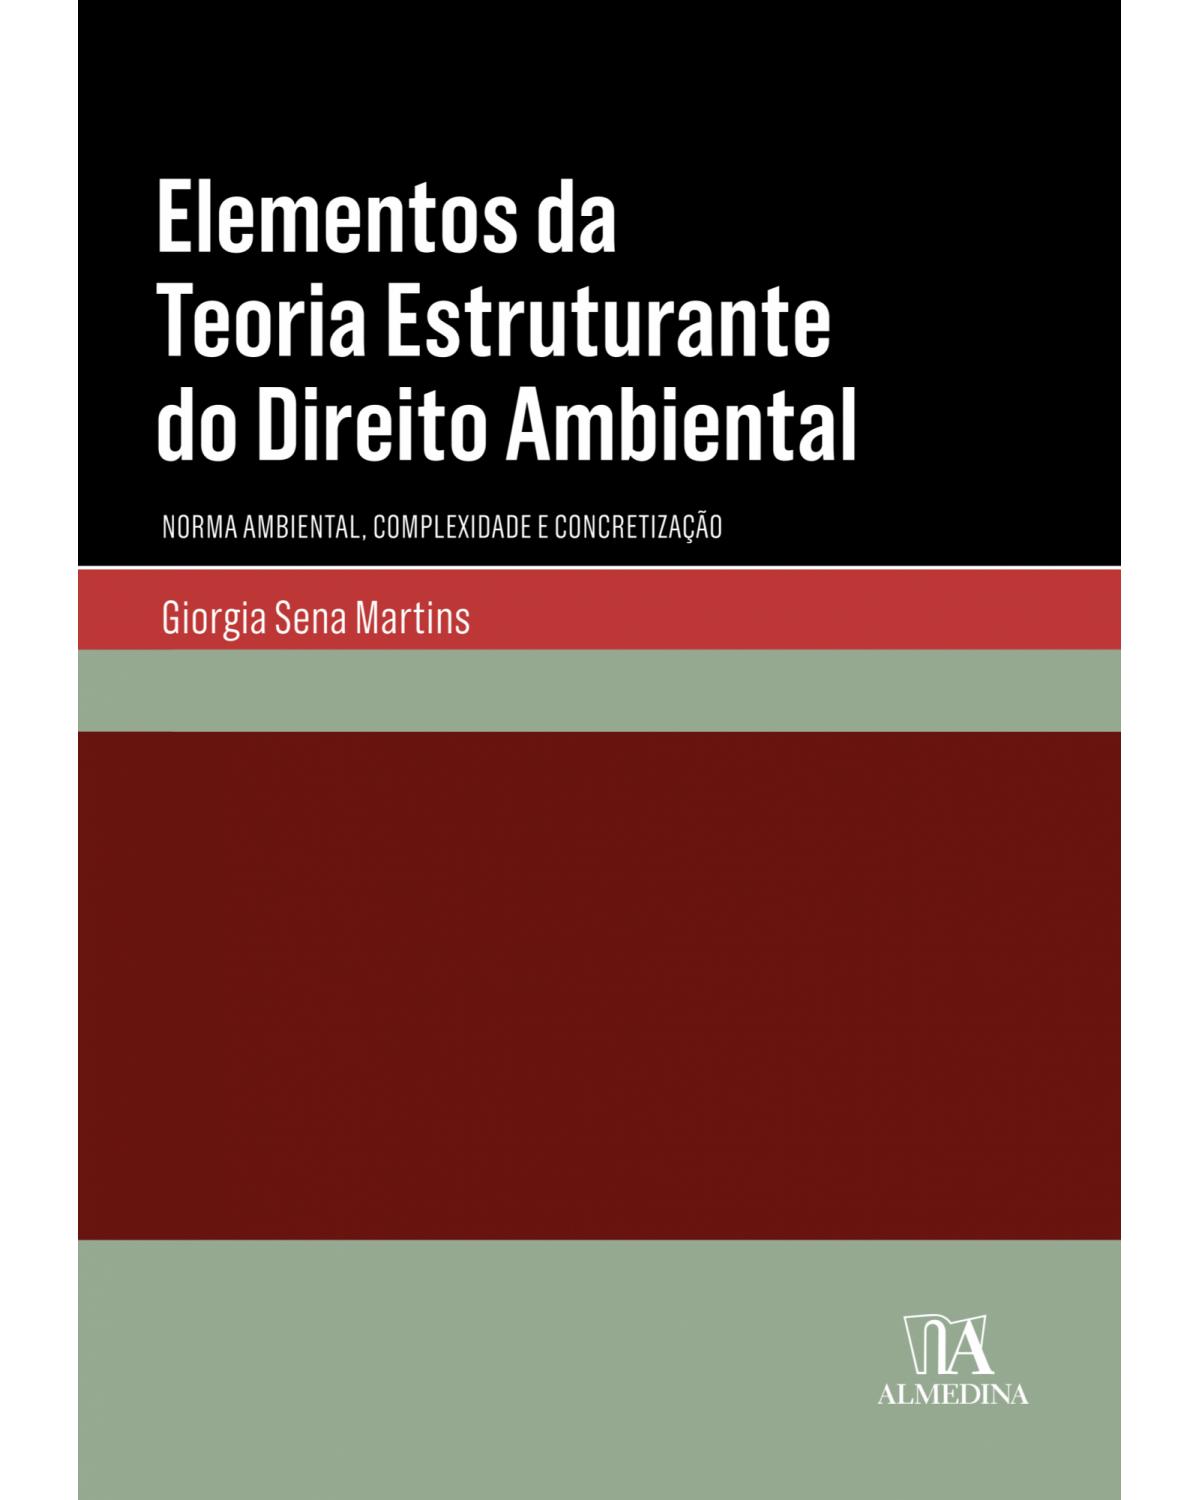 Elementos da teoria estruturante do direito ambiental - norma ambiental, complexidade e concretização - 1ª Edição | 2018